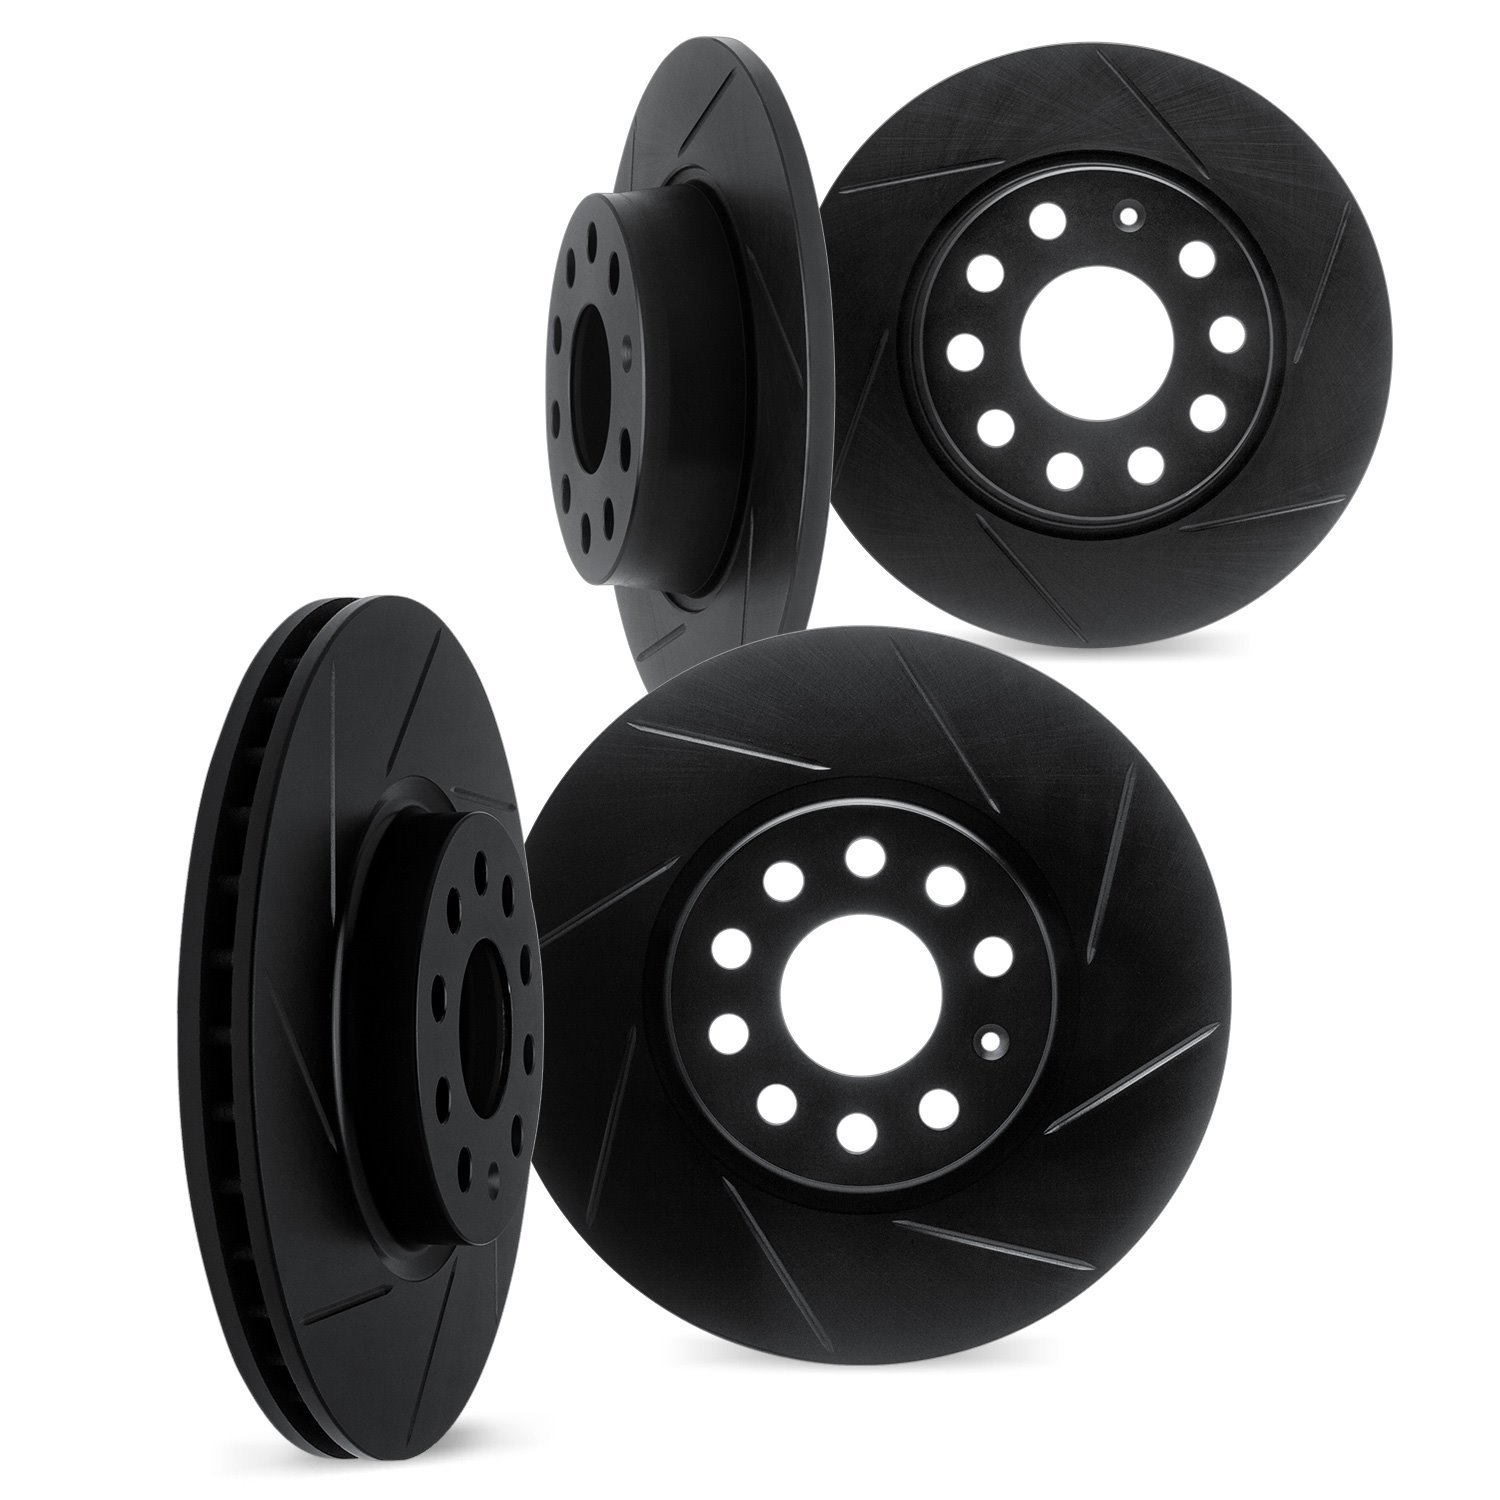 3004-03046 Slotted Brake Rotors [Black], Fits Select Kia/Hyundai/Genesis, Position: Front and Rear